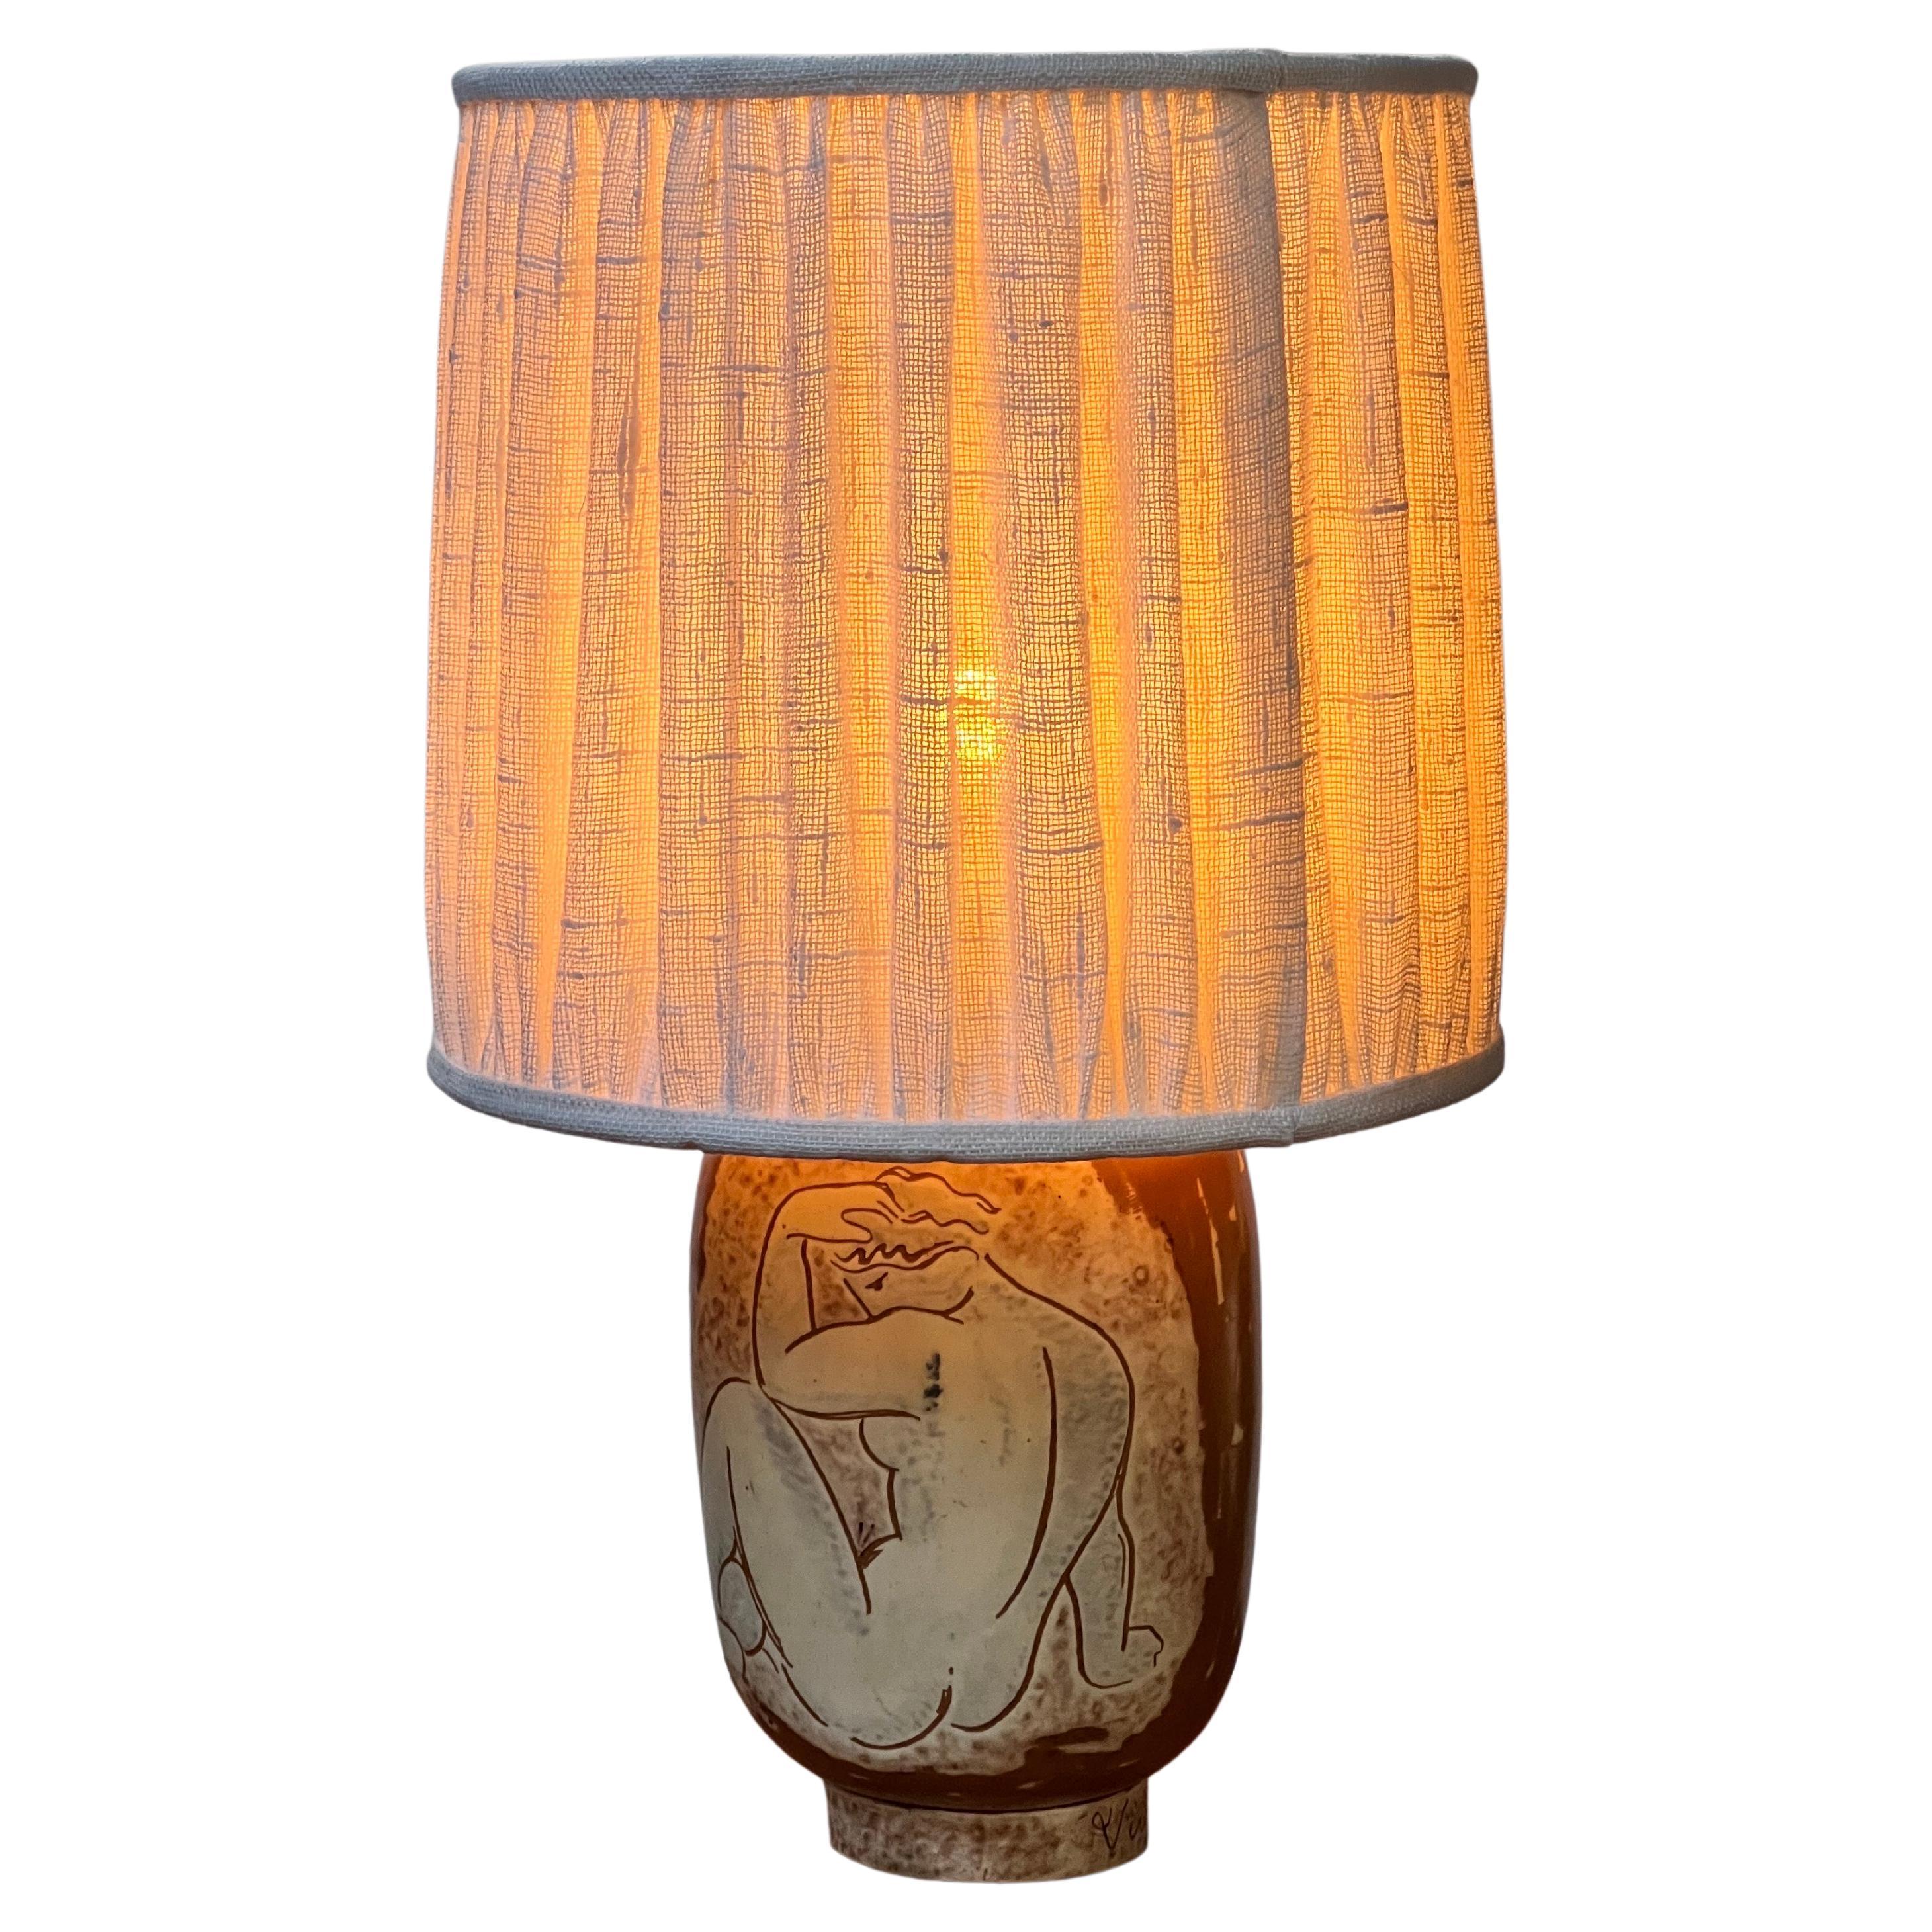 Il s'agit d'une véritable lampe en finition nacrée réalisée par le maître céramiste suédois Gunnar Nylund. Fabriqué en 1936. Il s'agit d'une véritable lampe et non comme la plupart d'entre elles d'un vase transformé en lampe. Il y a un nouvel